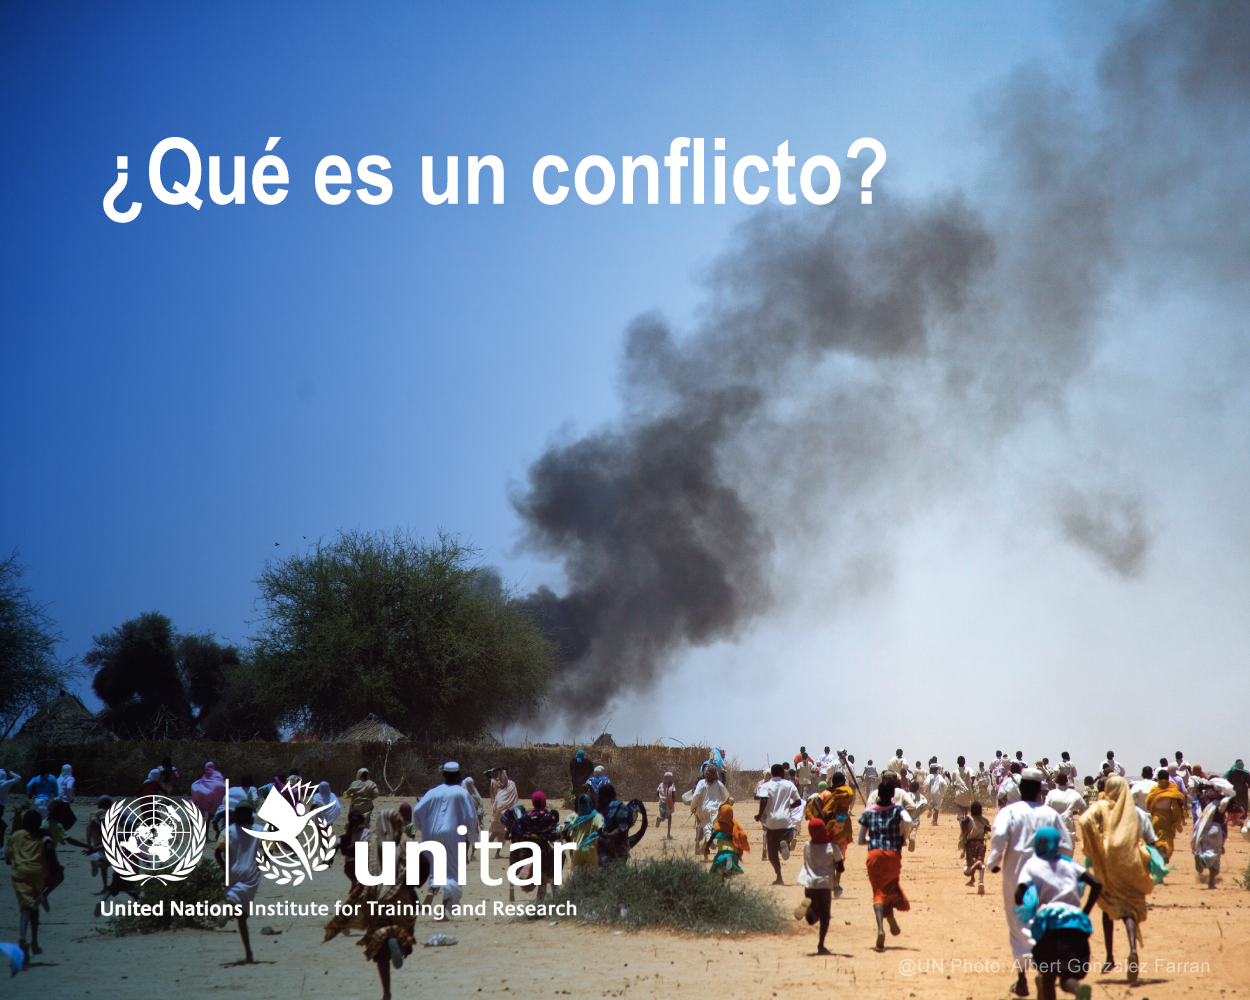 Curso de introducción al conflicto: 1. ¿Qué es un conflicto? [PTP.2023.18E]